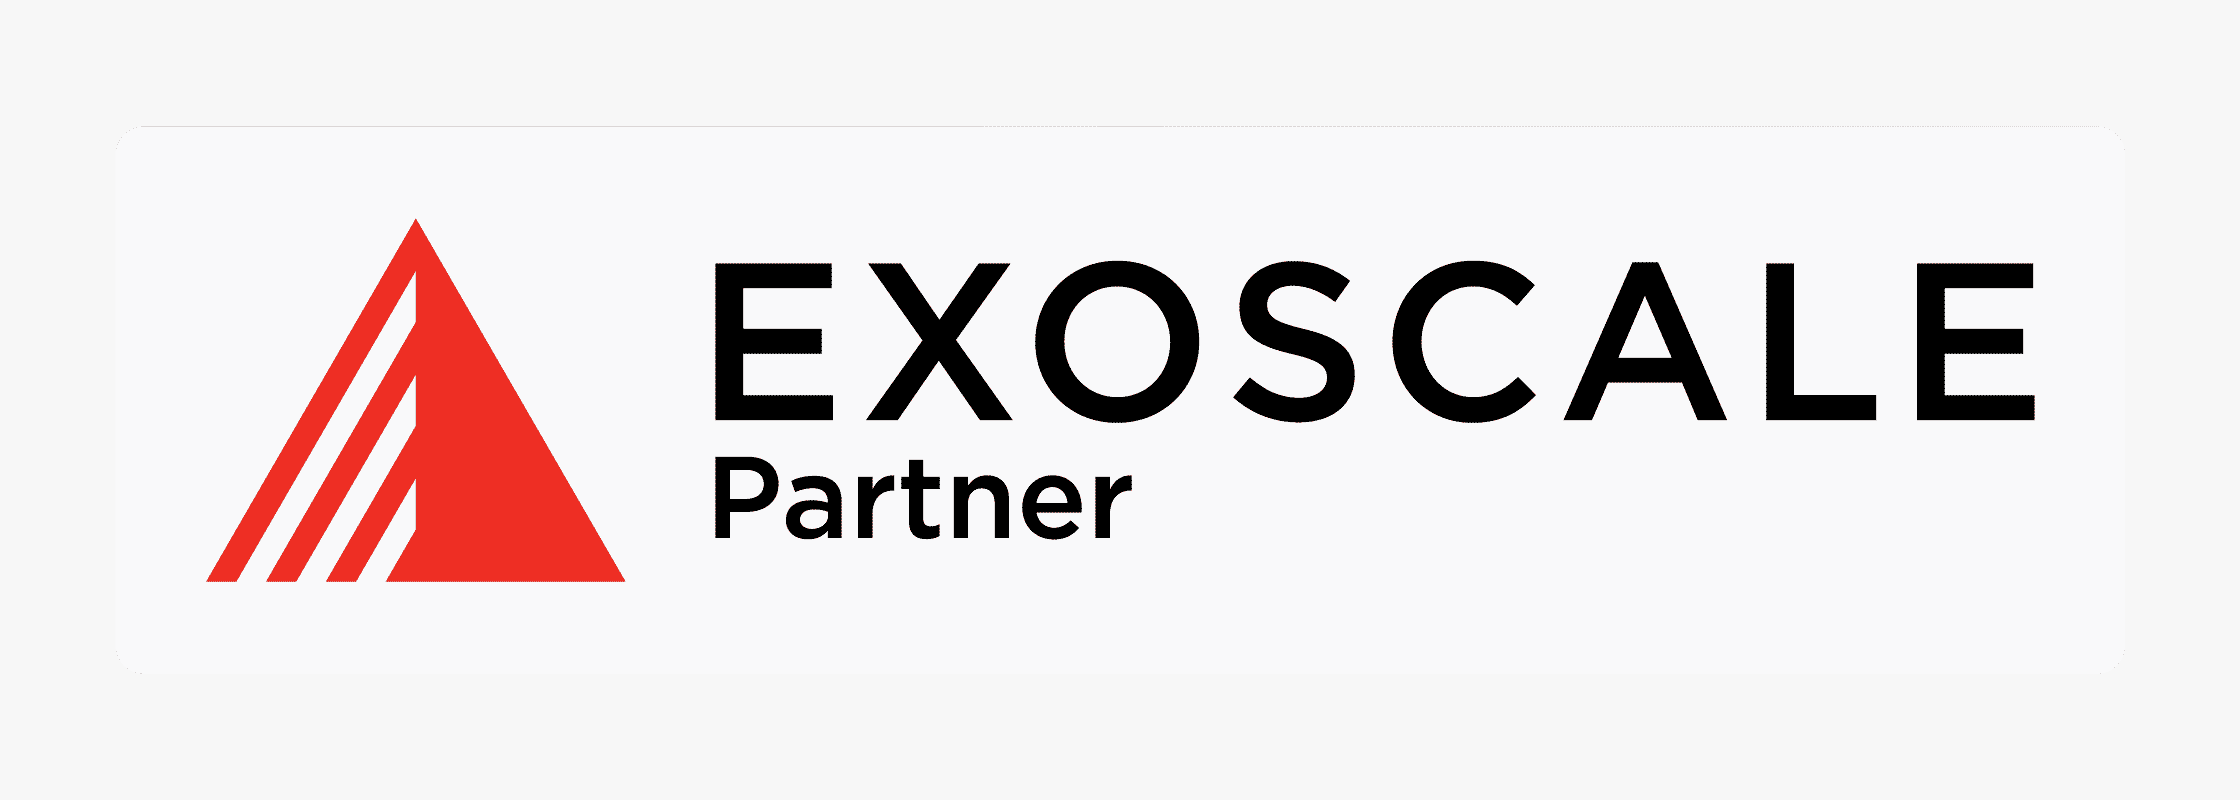 logo-exoscale-partner (1)